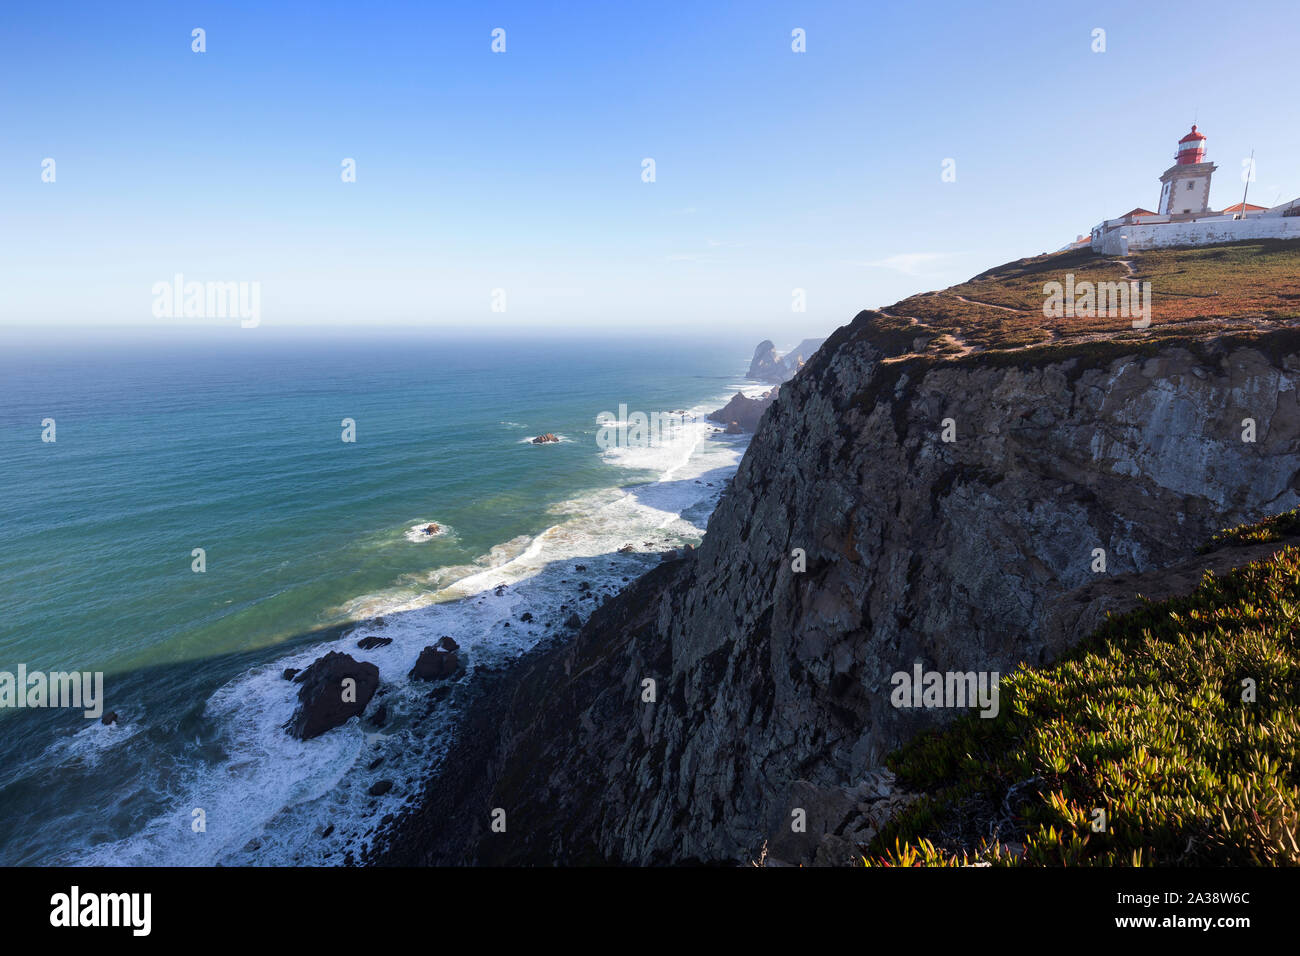 Vista panoramica dell'Oceano Atlantico, faro e costa scoscesa a Cabo da Roca, il punto più occidentale dell'Europa continentale, in Portogallo. Foto Stock